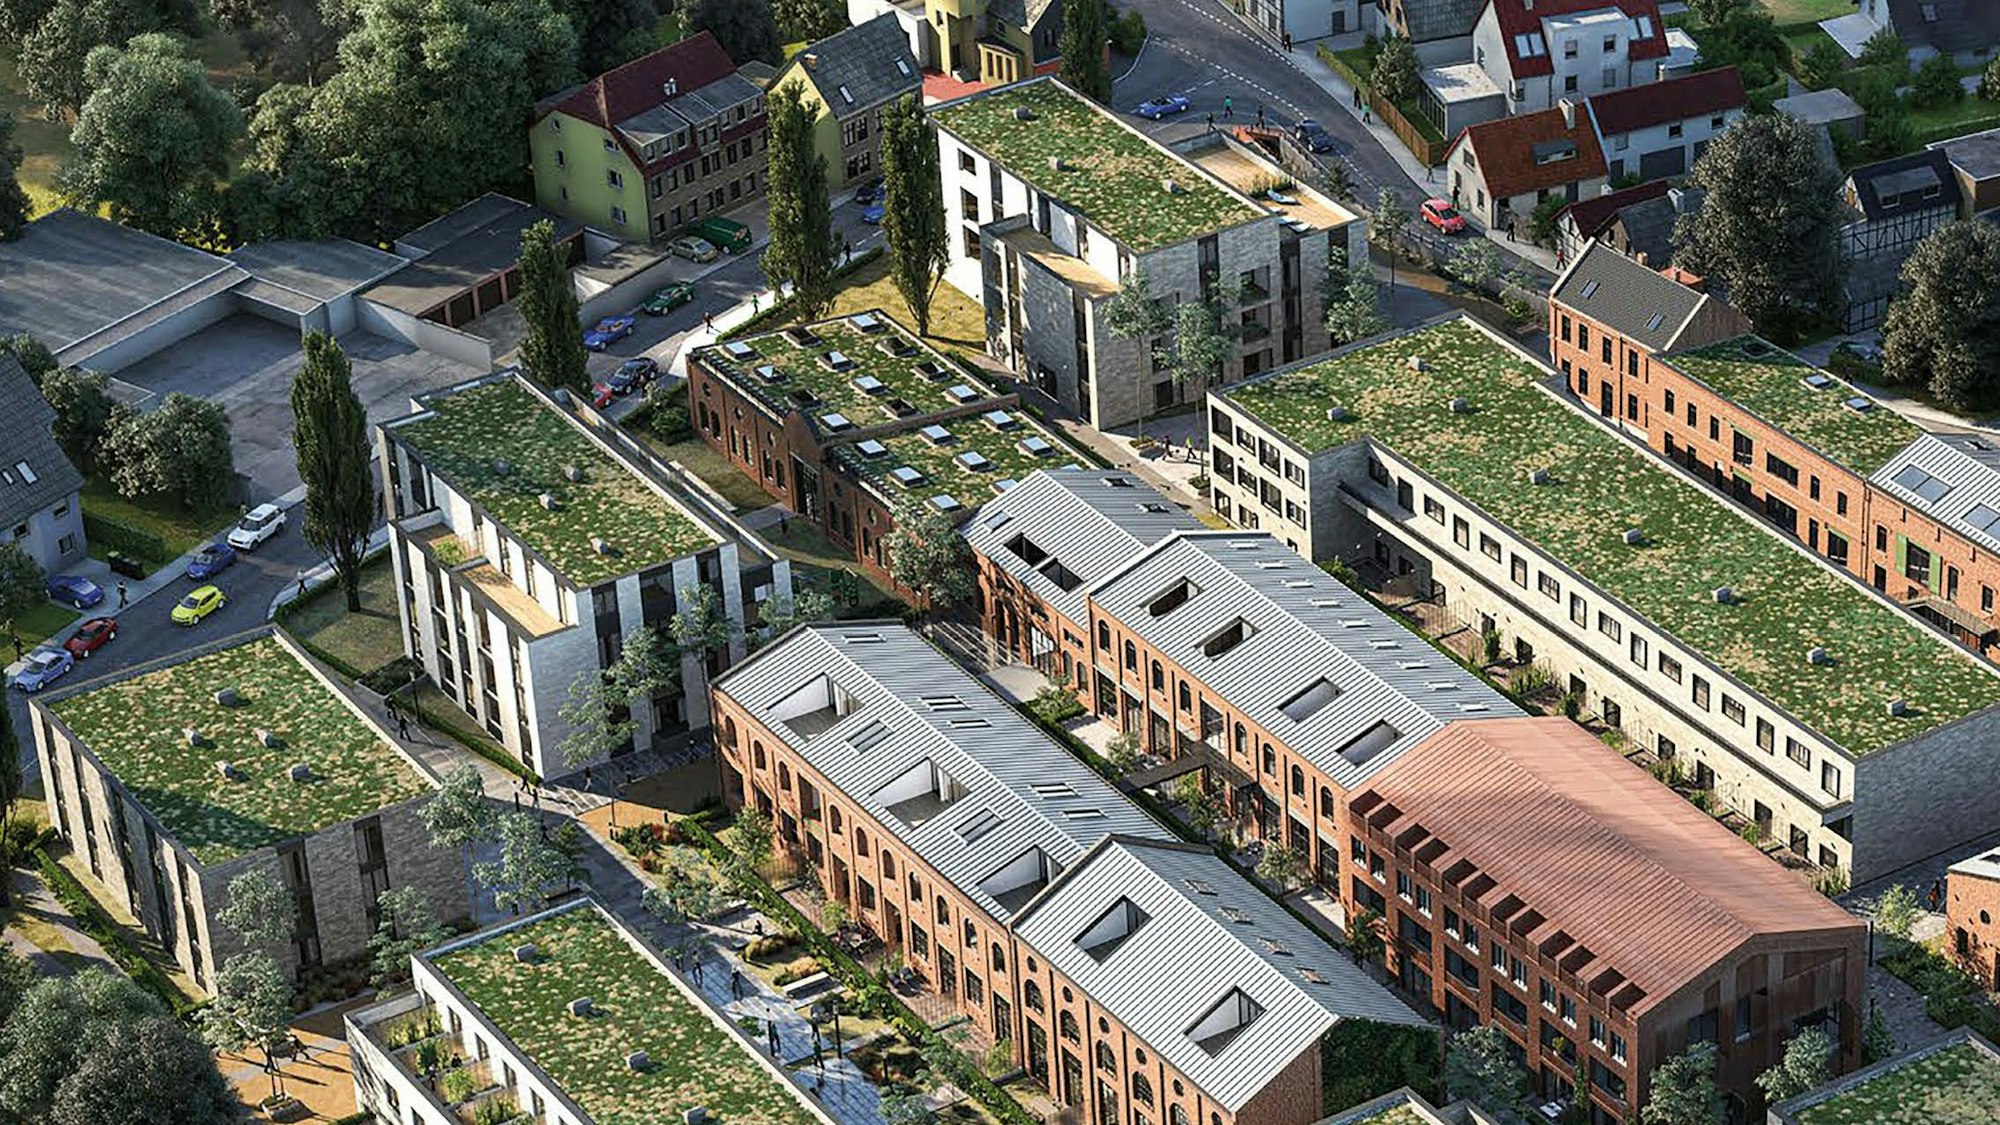 Mehrere Wohngebäude mit teilweise grünen Flachdächern sind im Modell zu sehen.